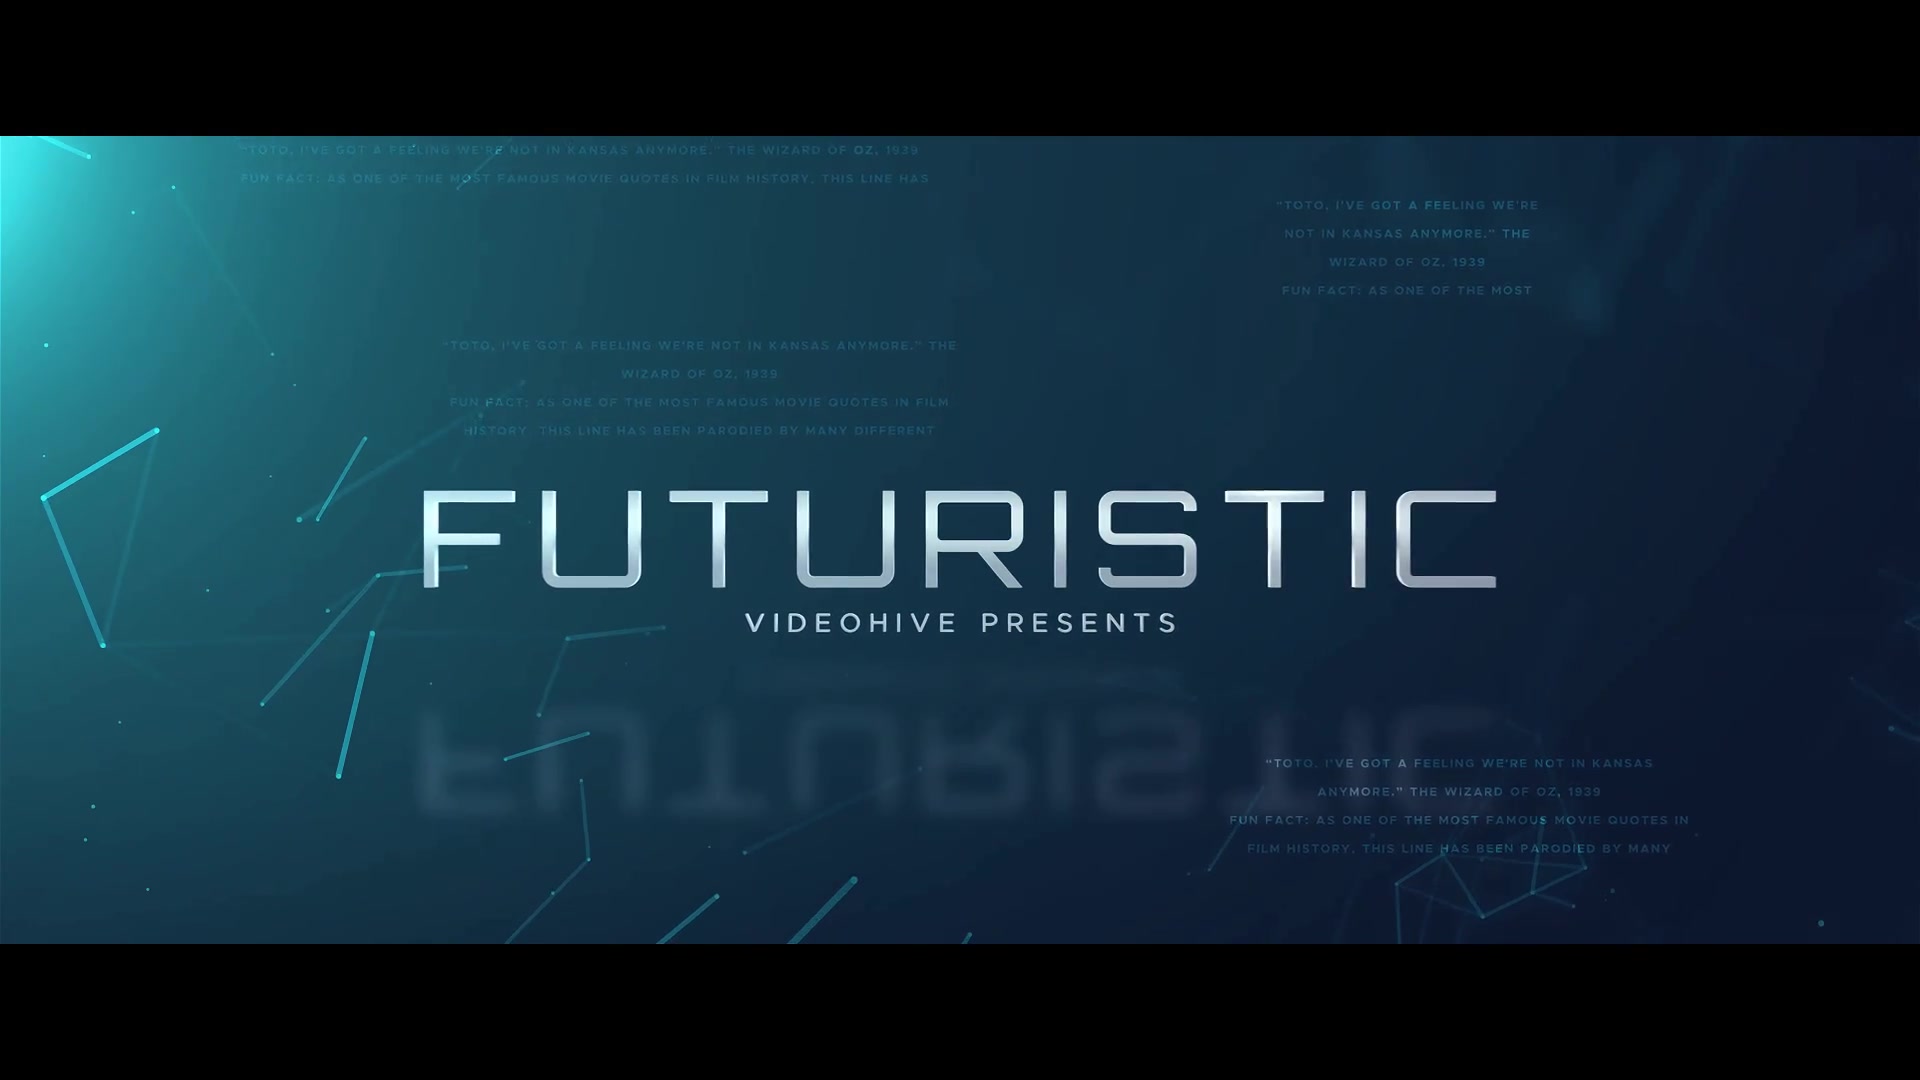 Futuristic World Trailer Videohive 34262599 Premiere Pro Image 2